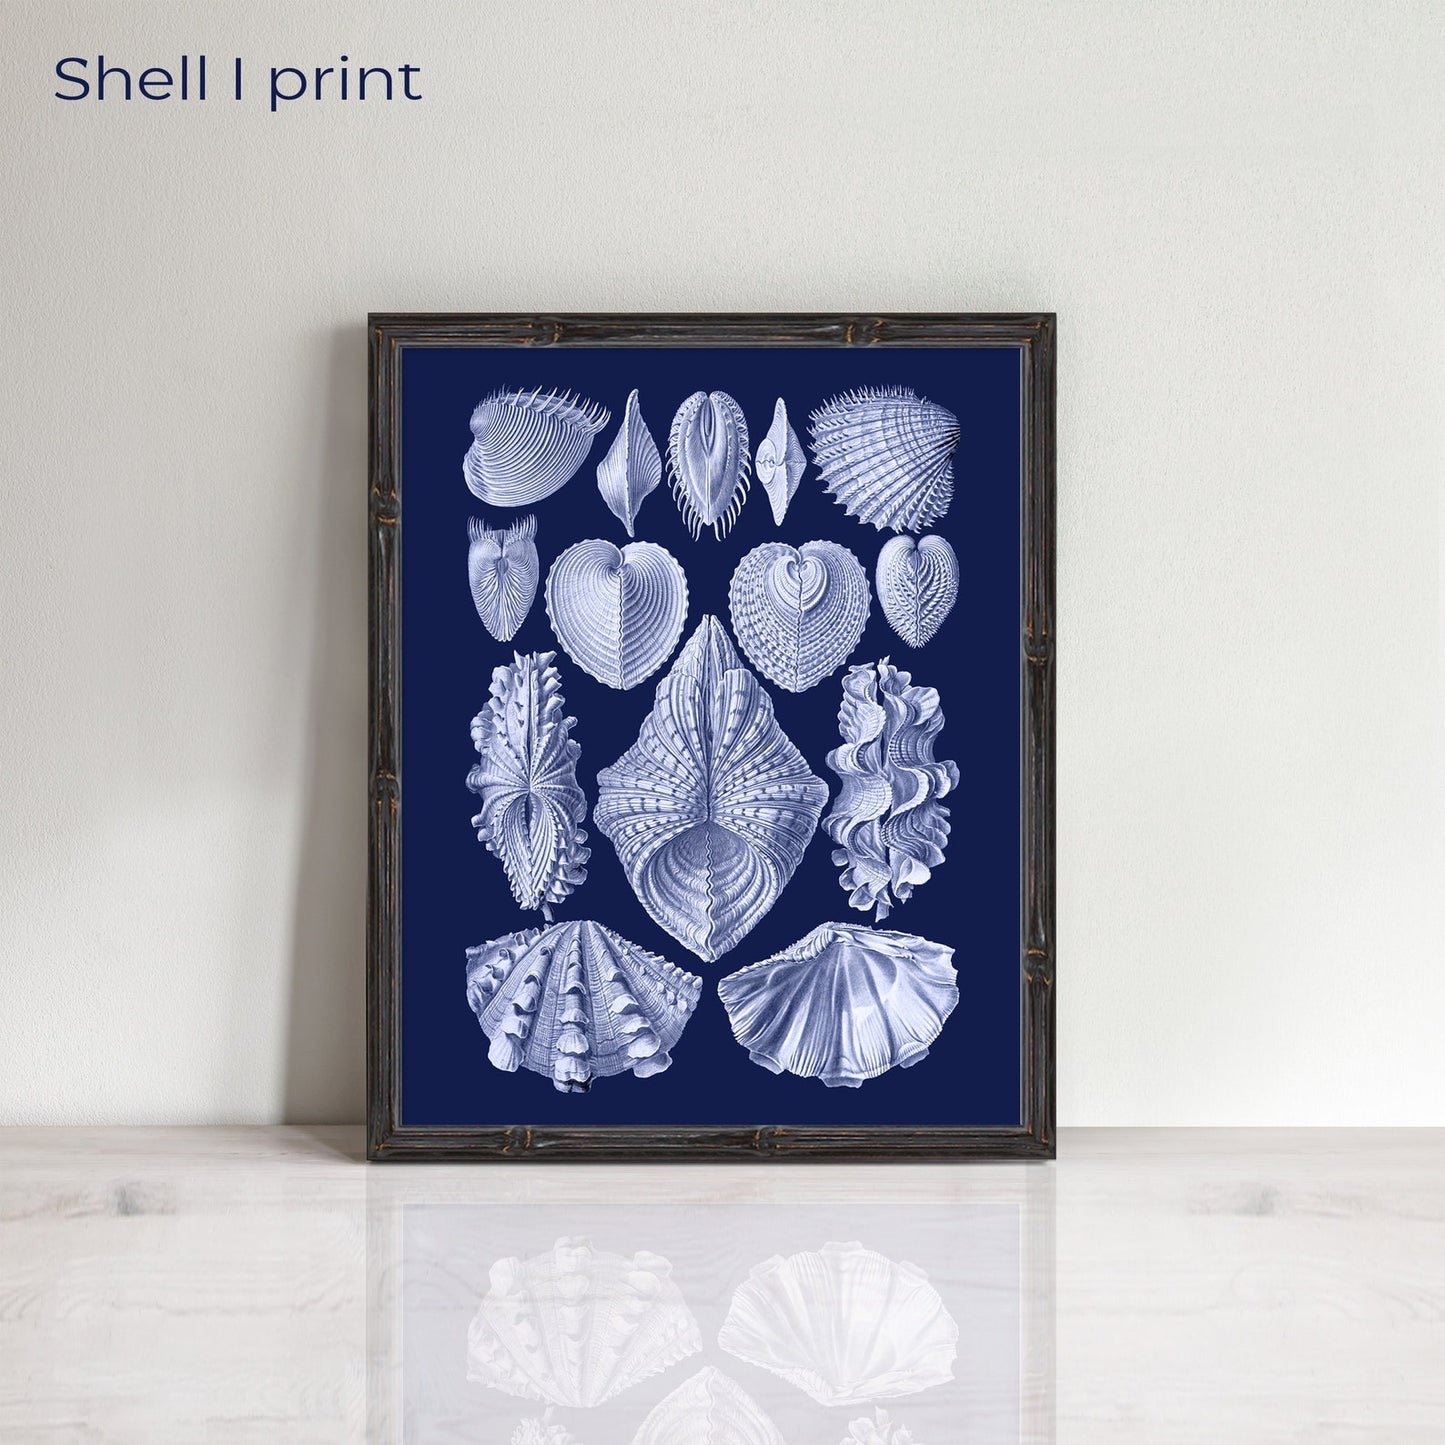 Vintage set of shells prints